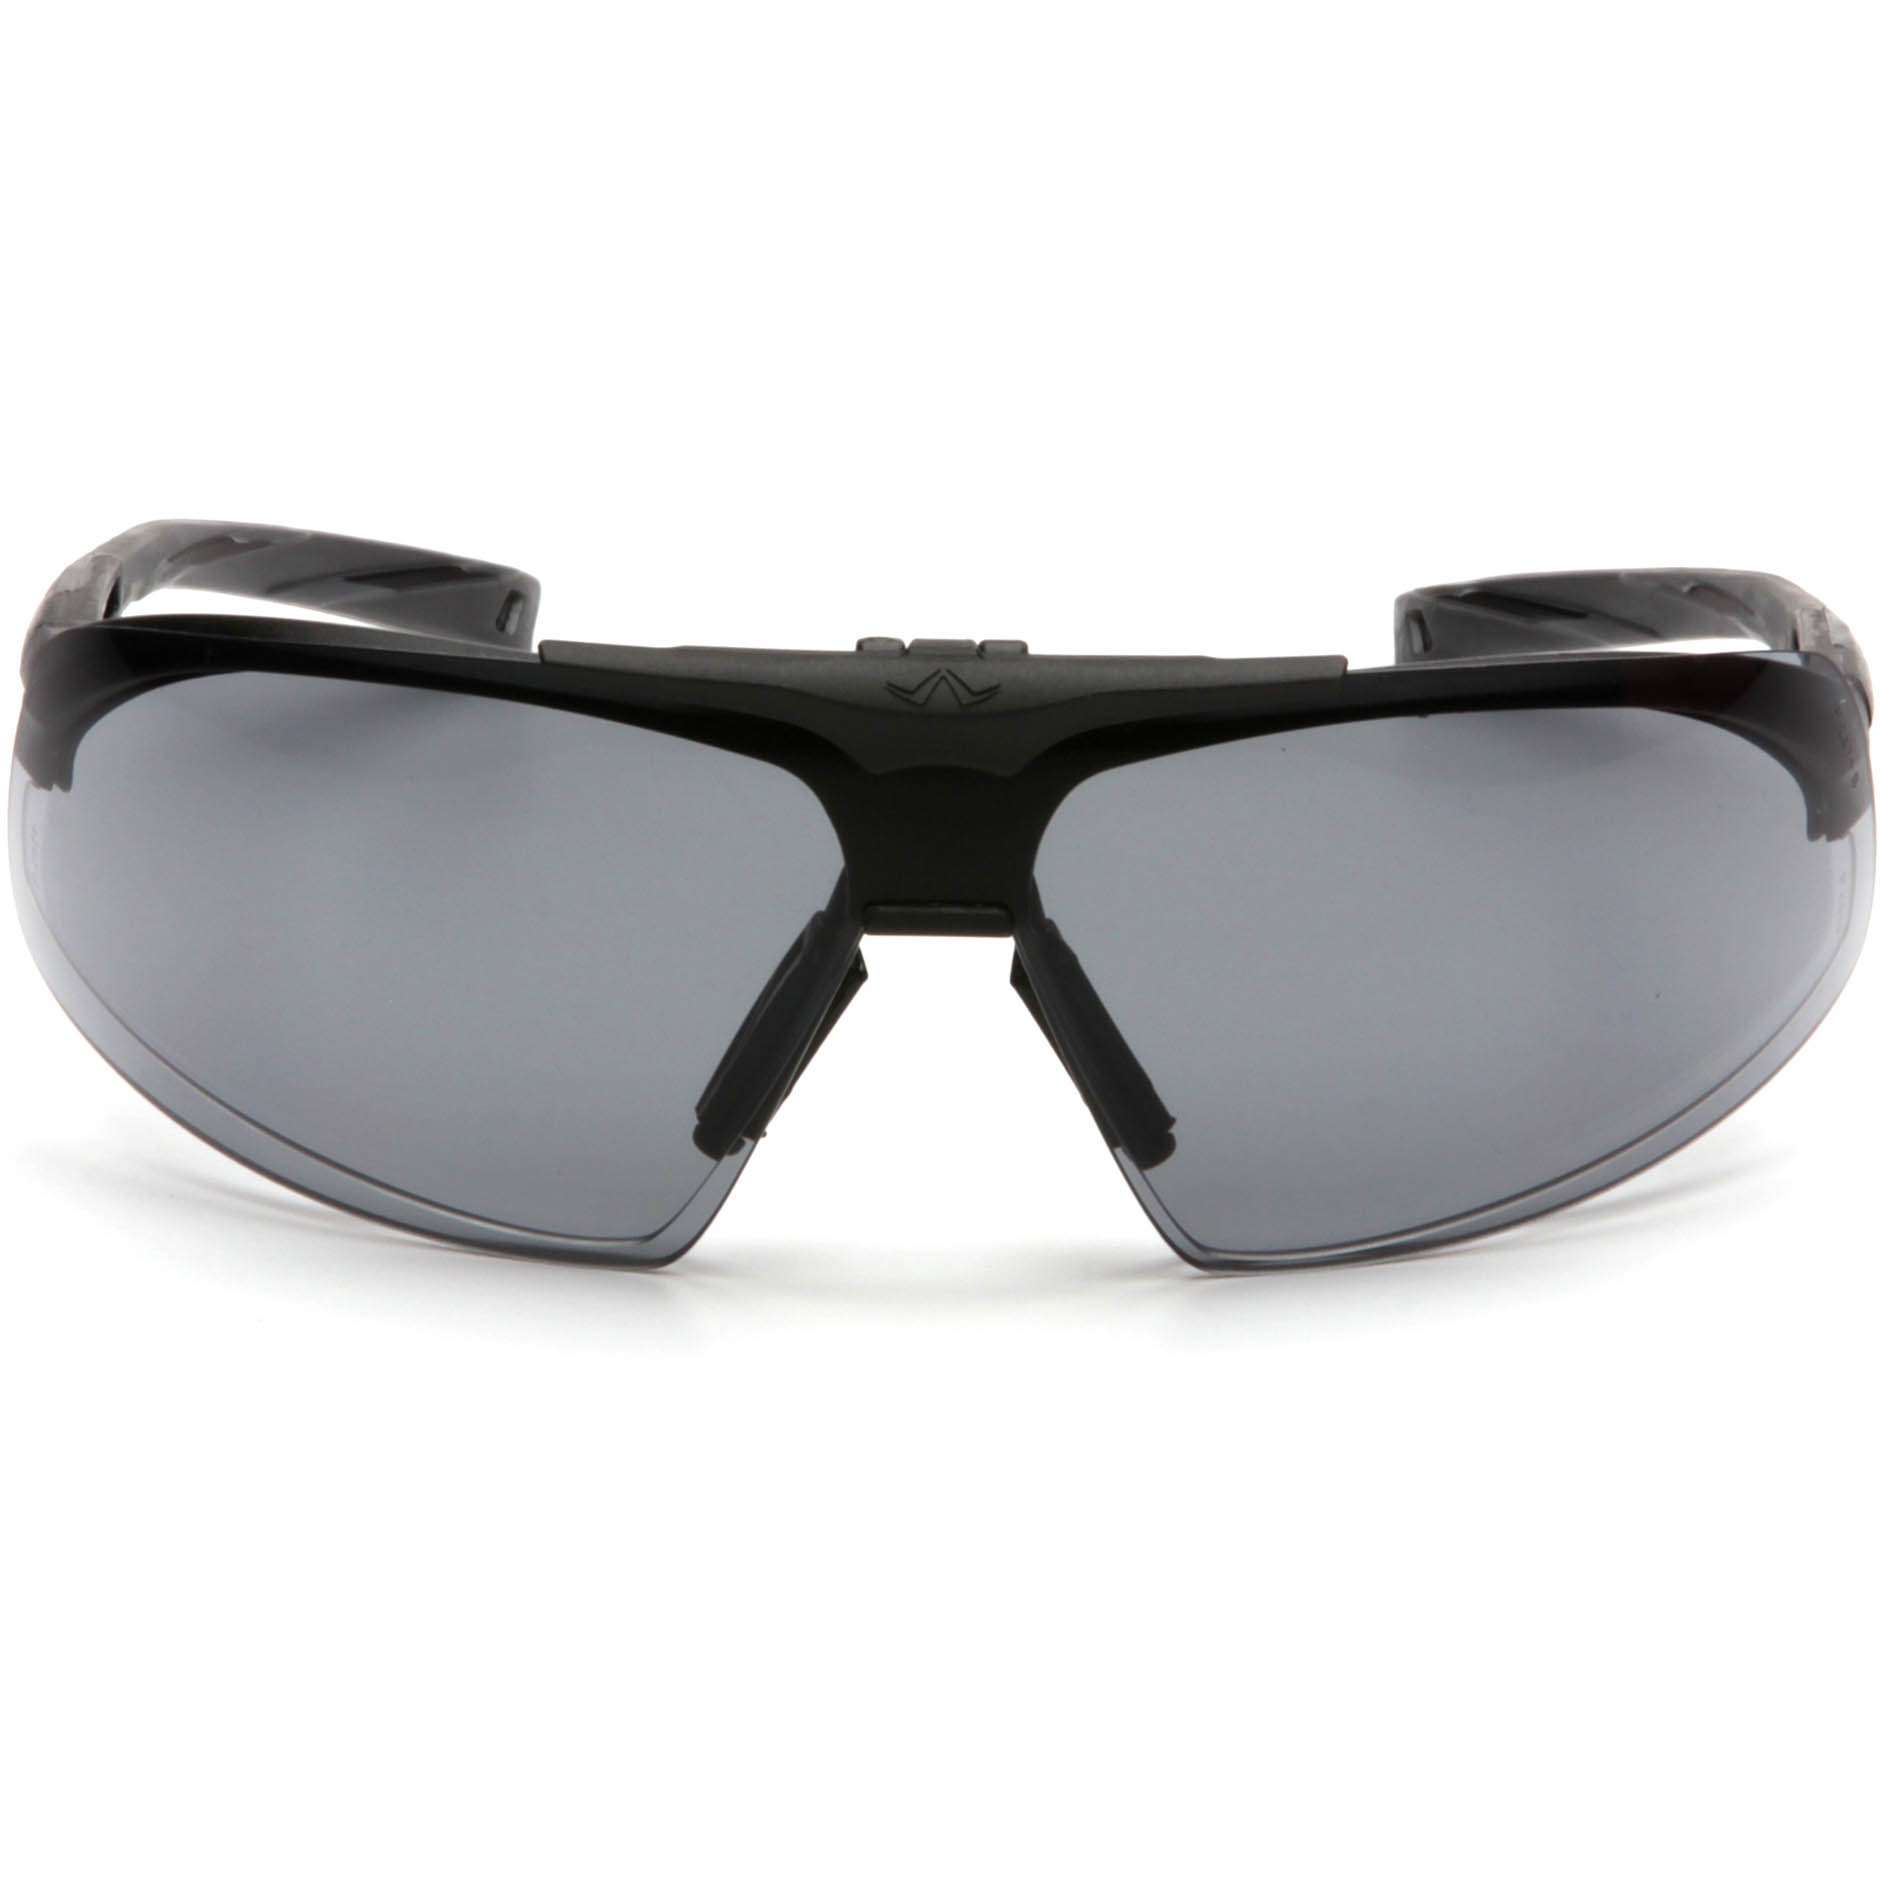 Pyramex Onix Plus Safety Glasses - Black Frame - Clear Anti-Fog Lens ...